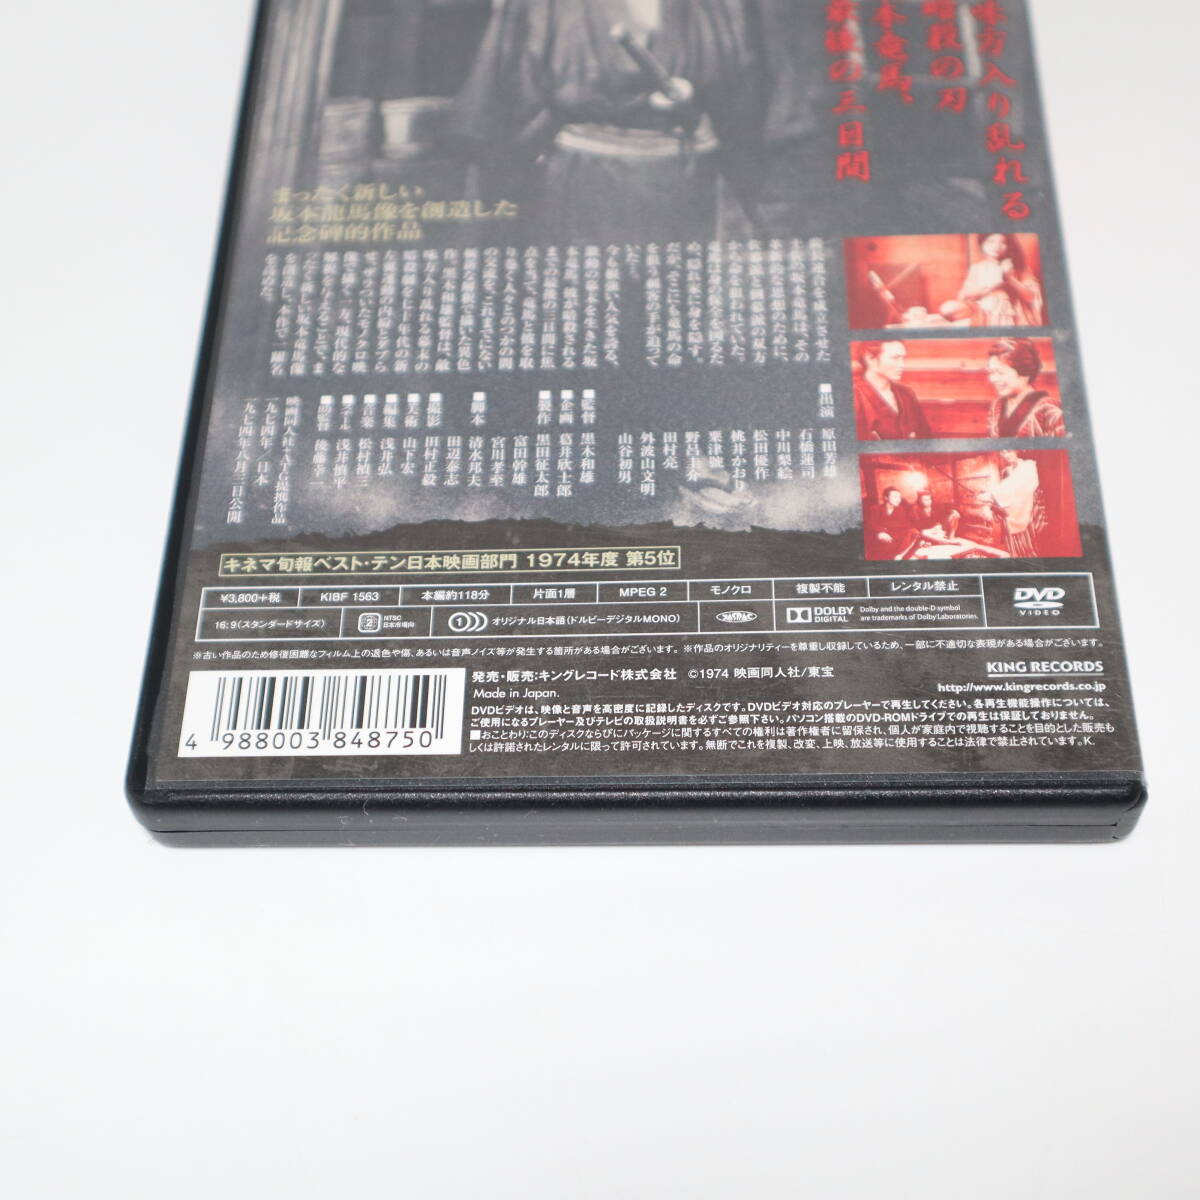 竜馬暗殺 セル版 DVD HDニューマスター版 KIBF 1563 キングレコード 松田優作 原田芳雄_画像10